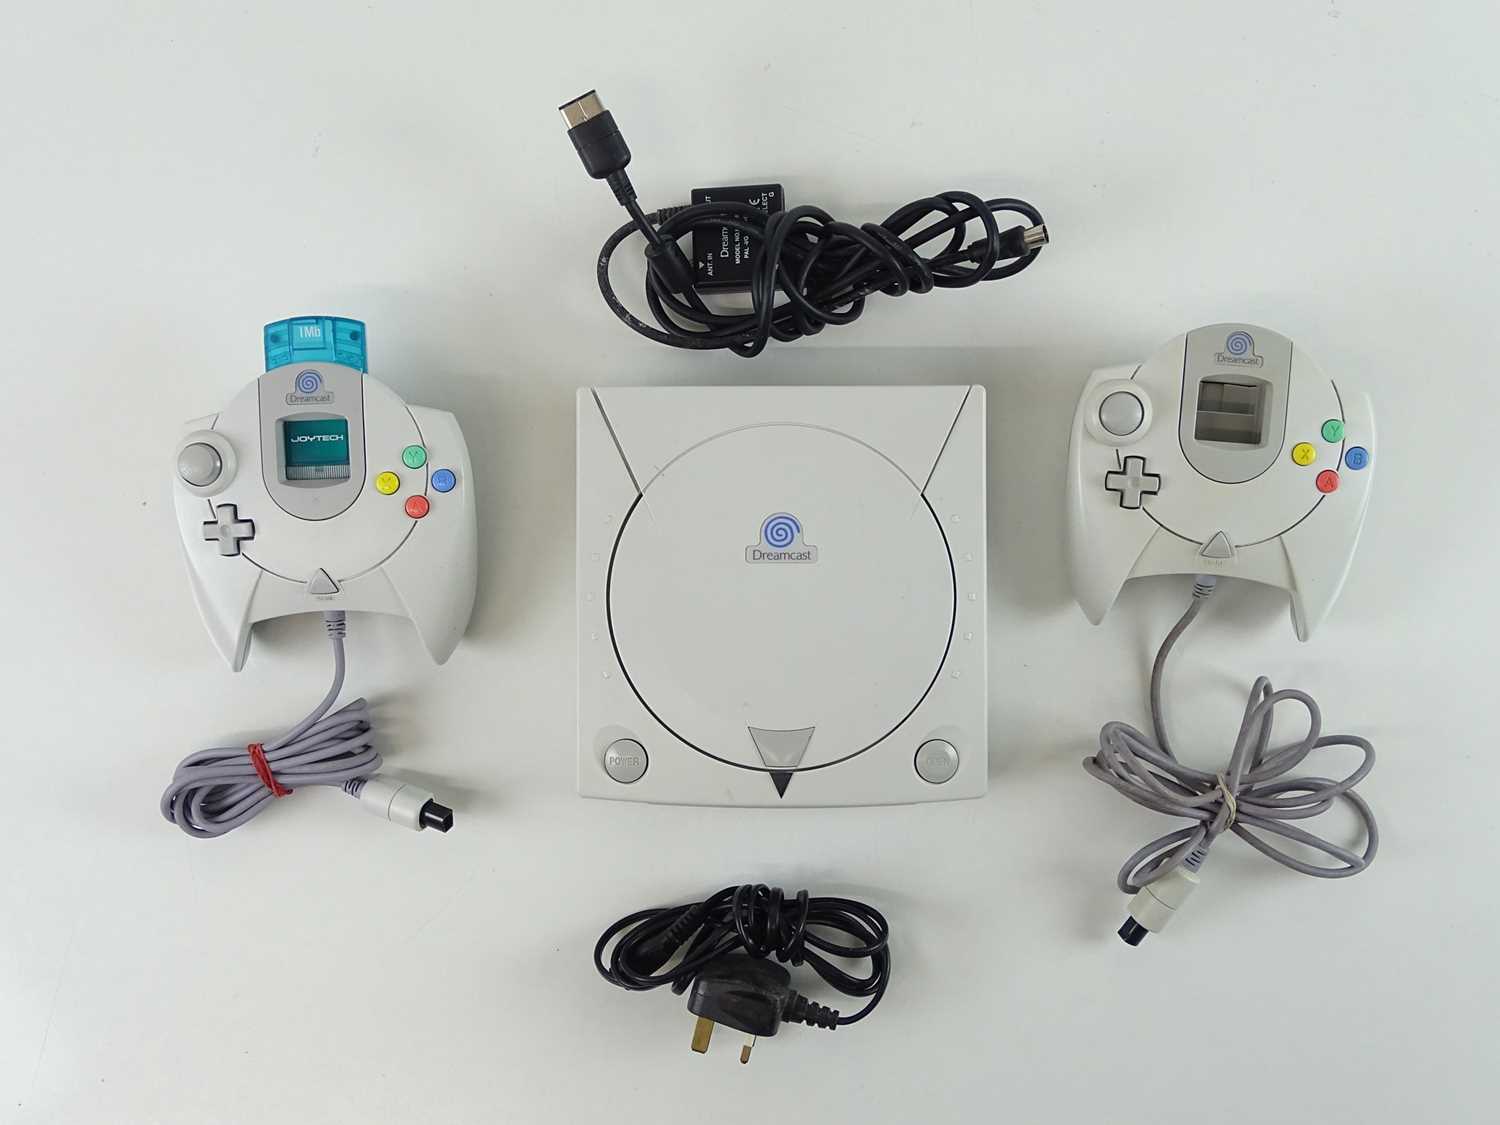 Lot 28 - Sega Dreamcast console - released in 1998 